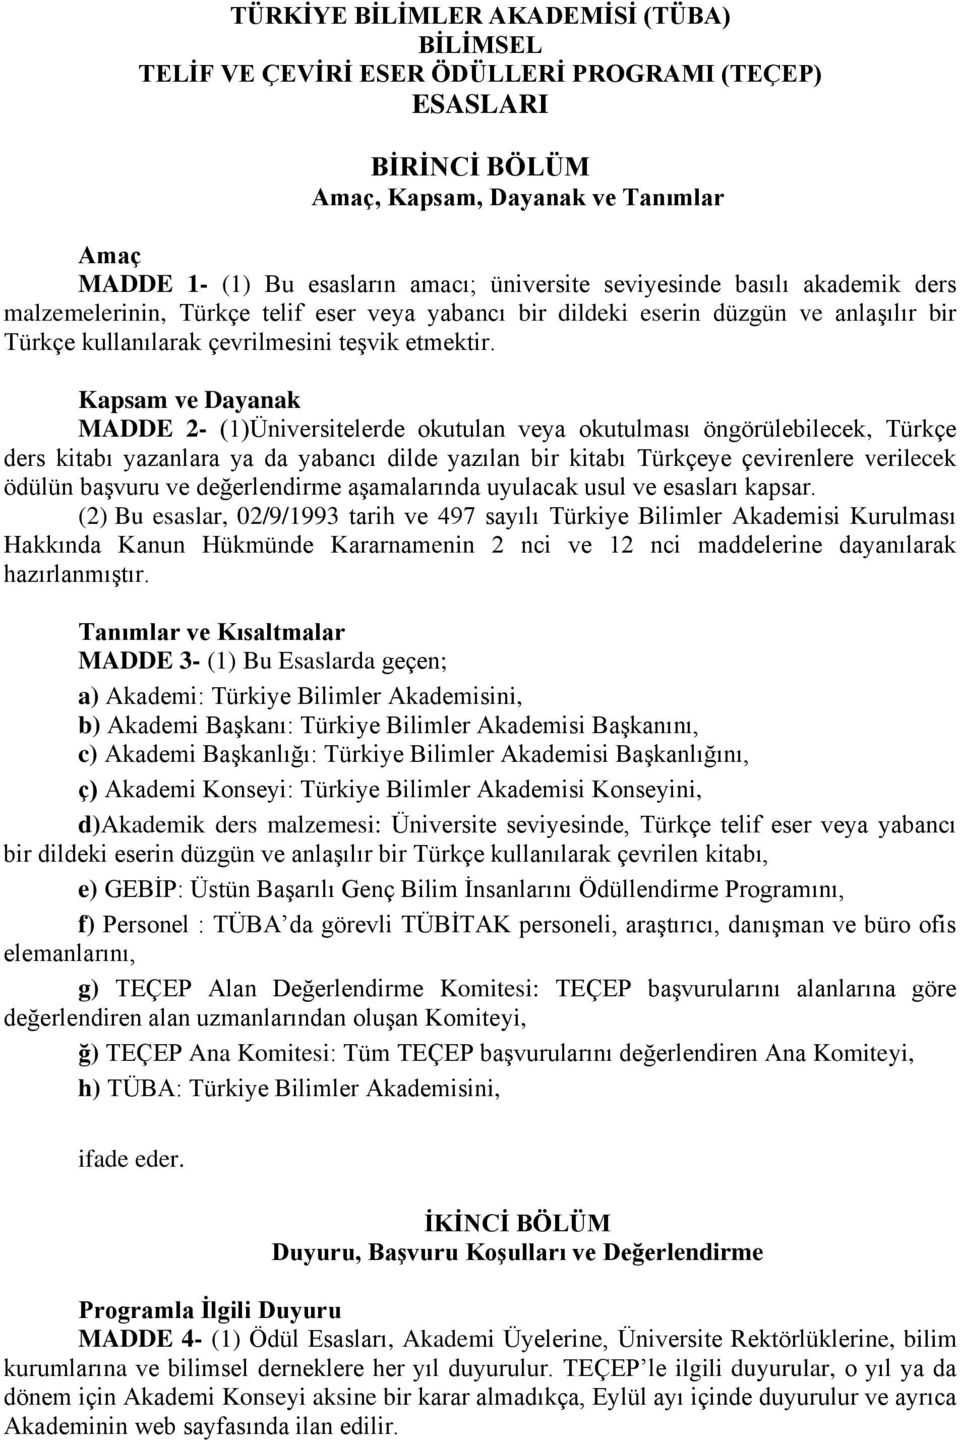 Kapsam ve Dayanak MADDE 2- (1)Üniversitelerde okutulan veya okutulması öngörülebilecek, Türkçe ders kitabı yazanlara ya da yabancı dilde yazılan bir kitabı Türkçeye çevirenlere verilecek ödülün